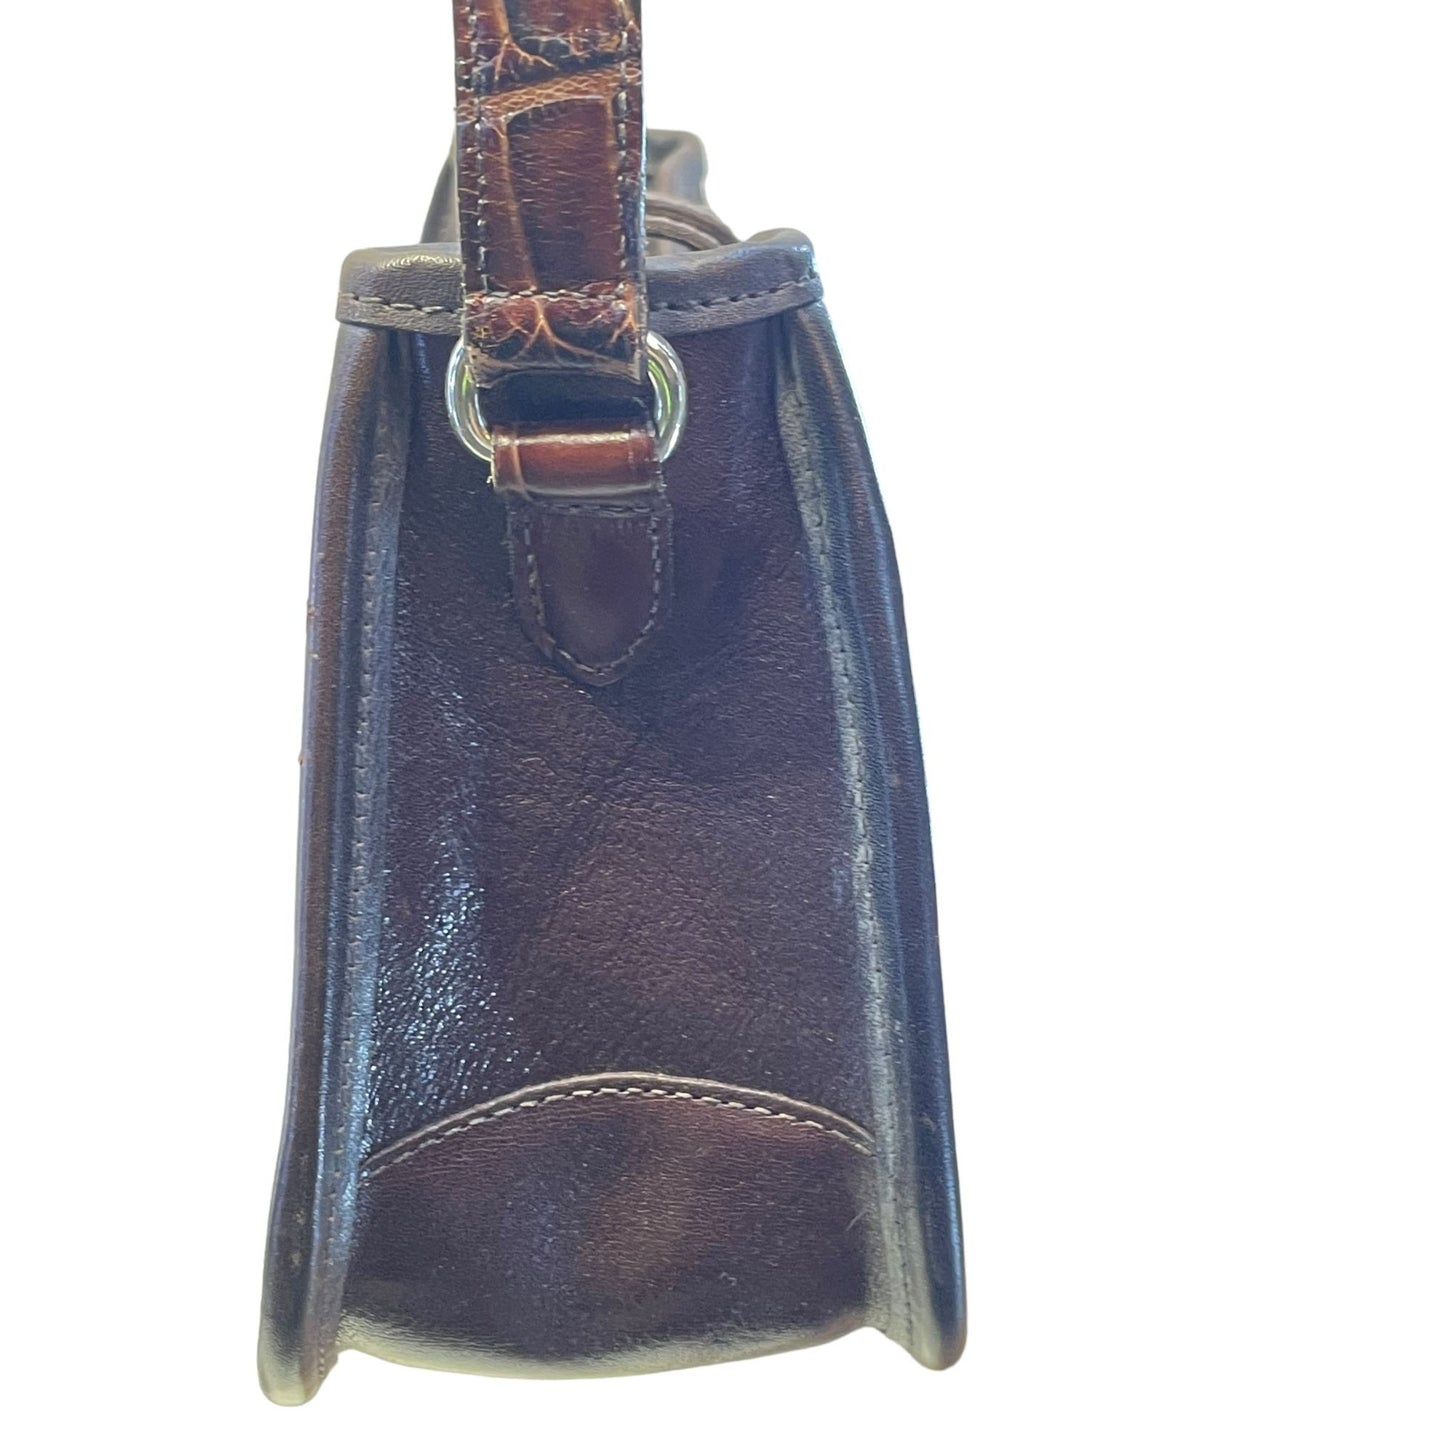 Brighton Brown Leather Shoulder Bag